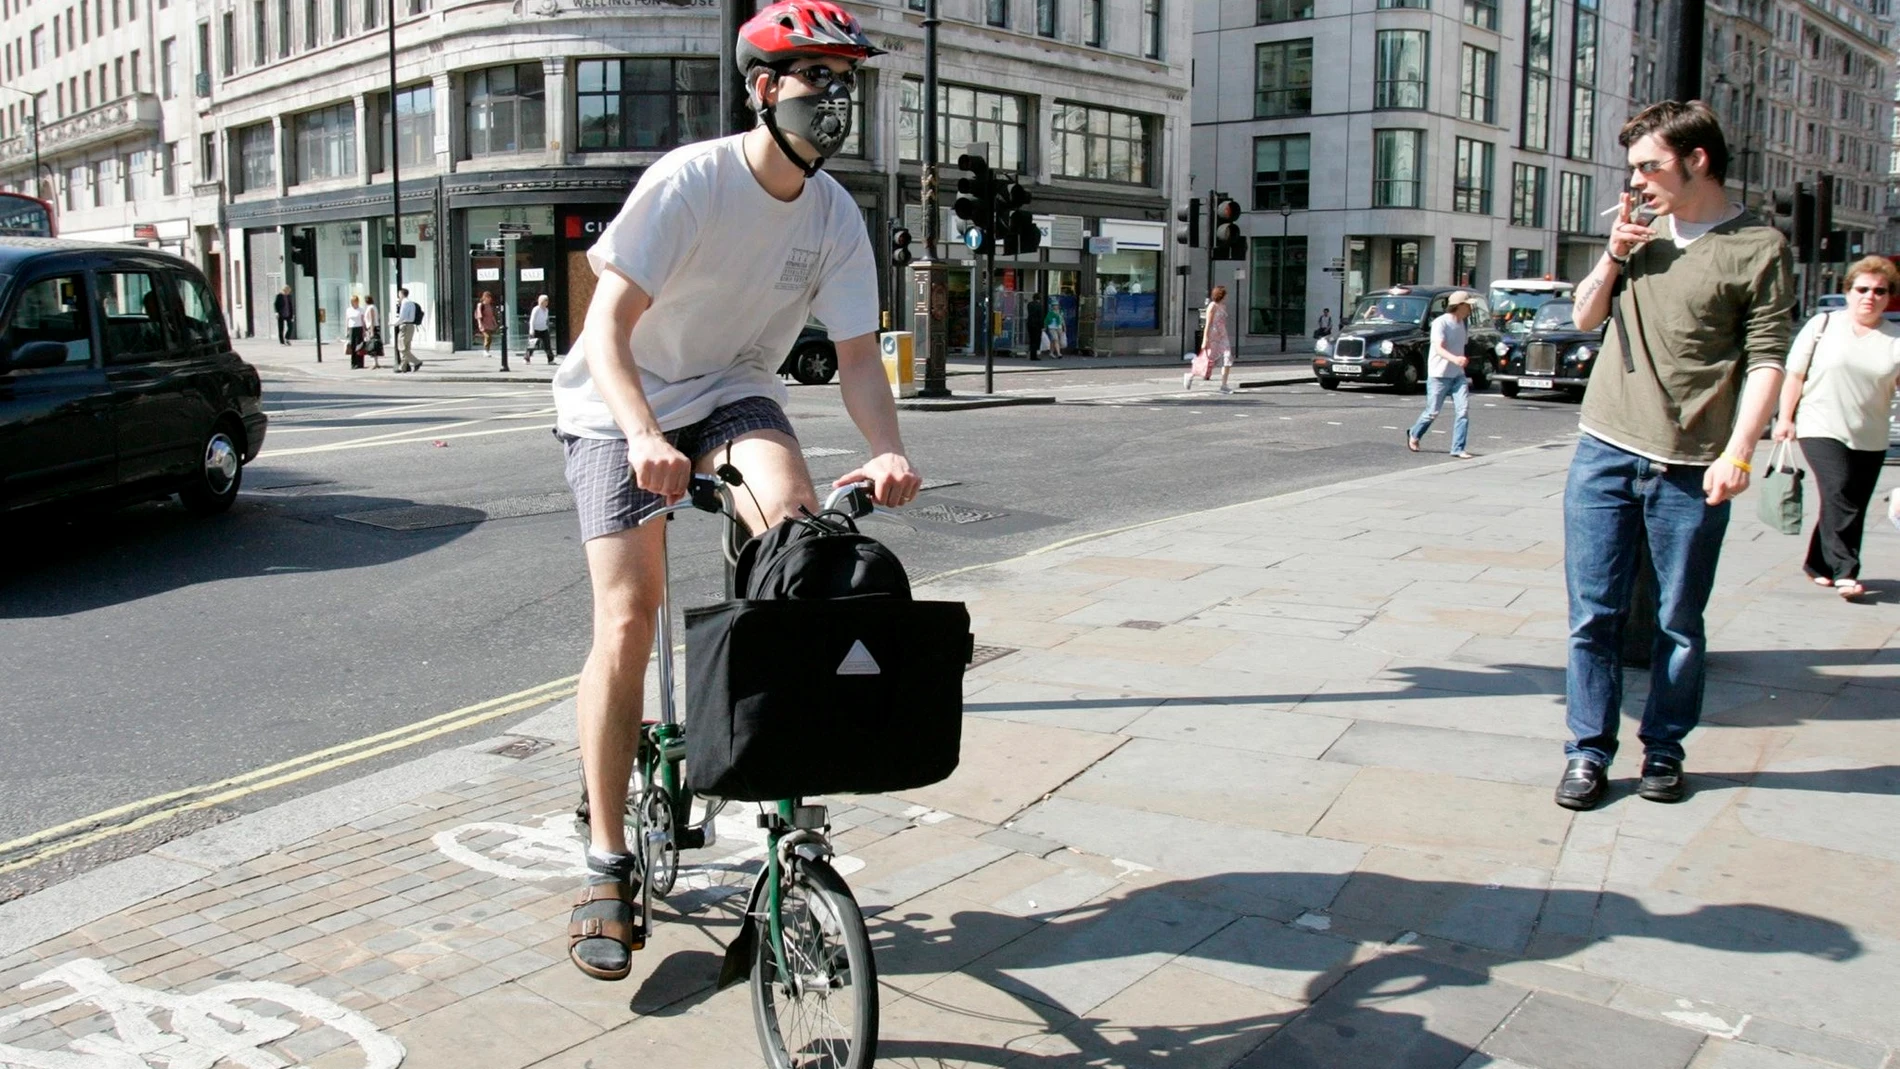 Un londinense se dirige a trabajar en bicicleta con mascarilla en la cara en Londres, Reino Unido.